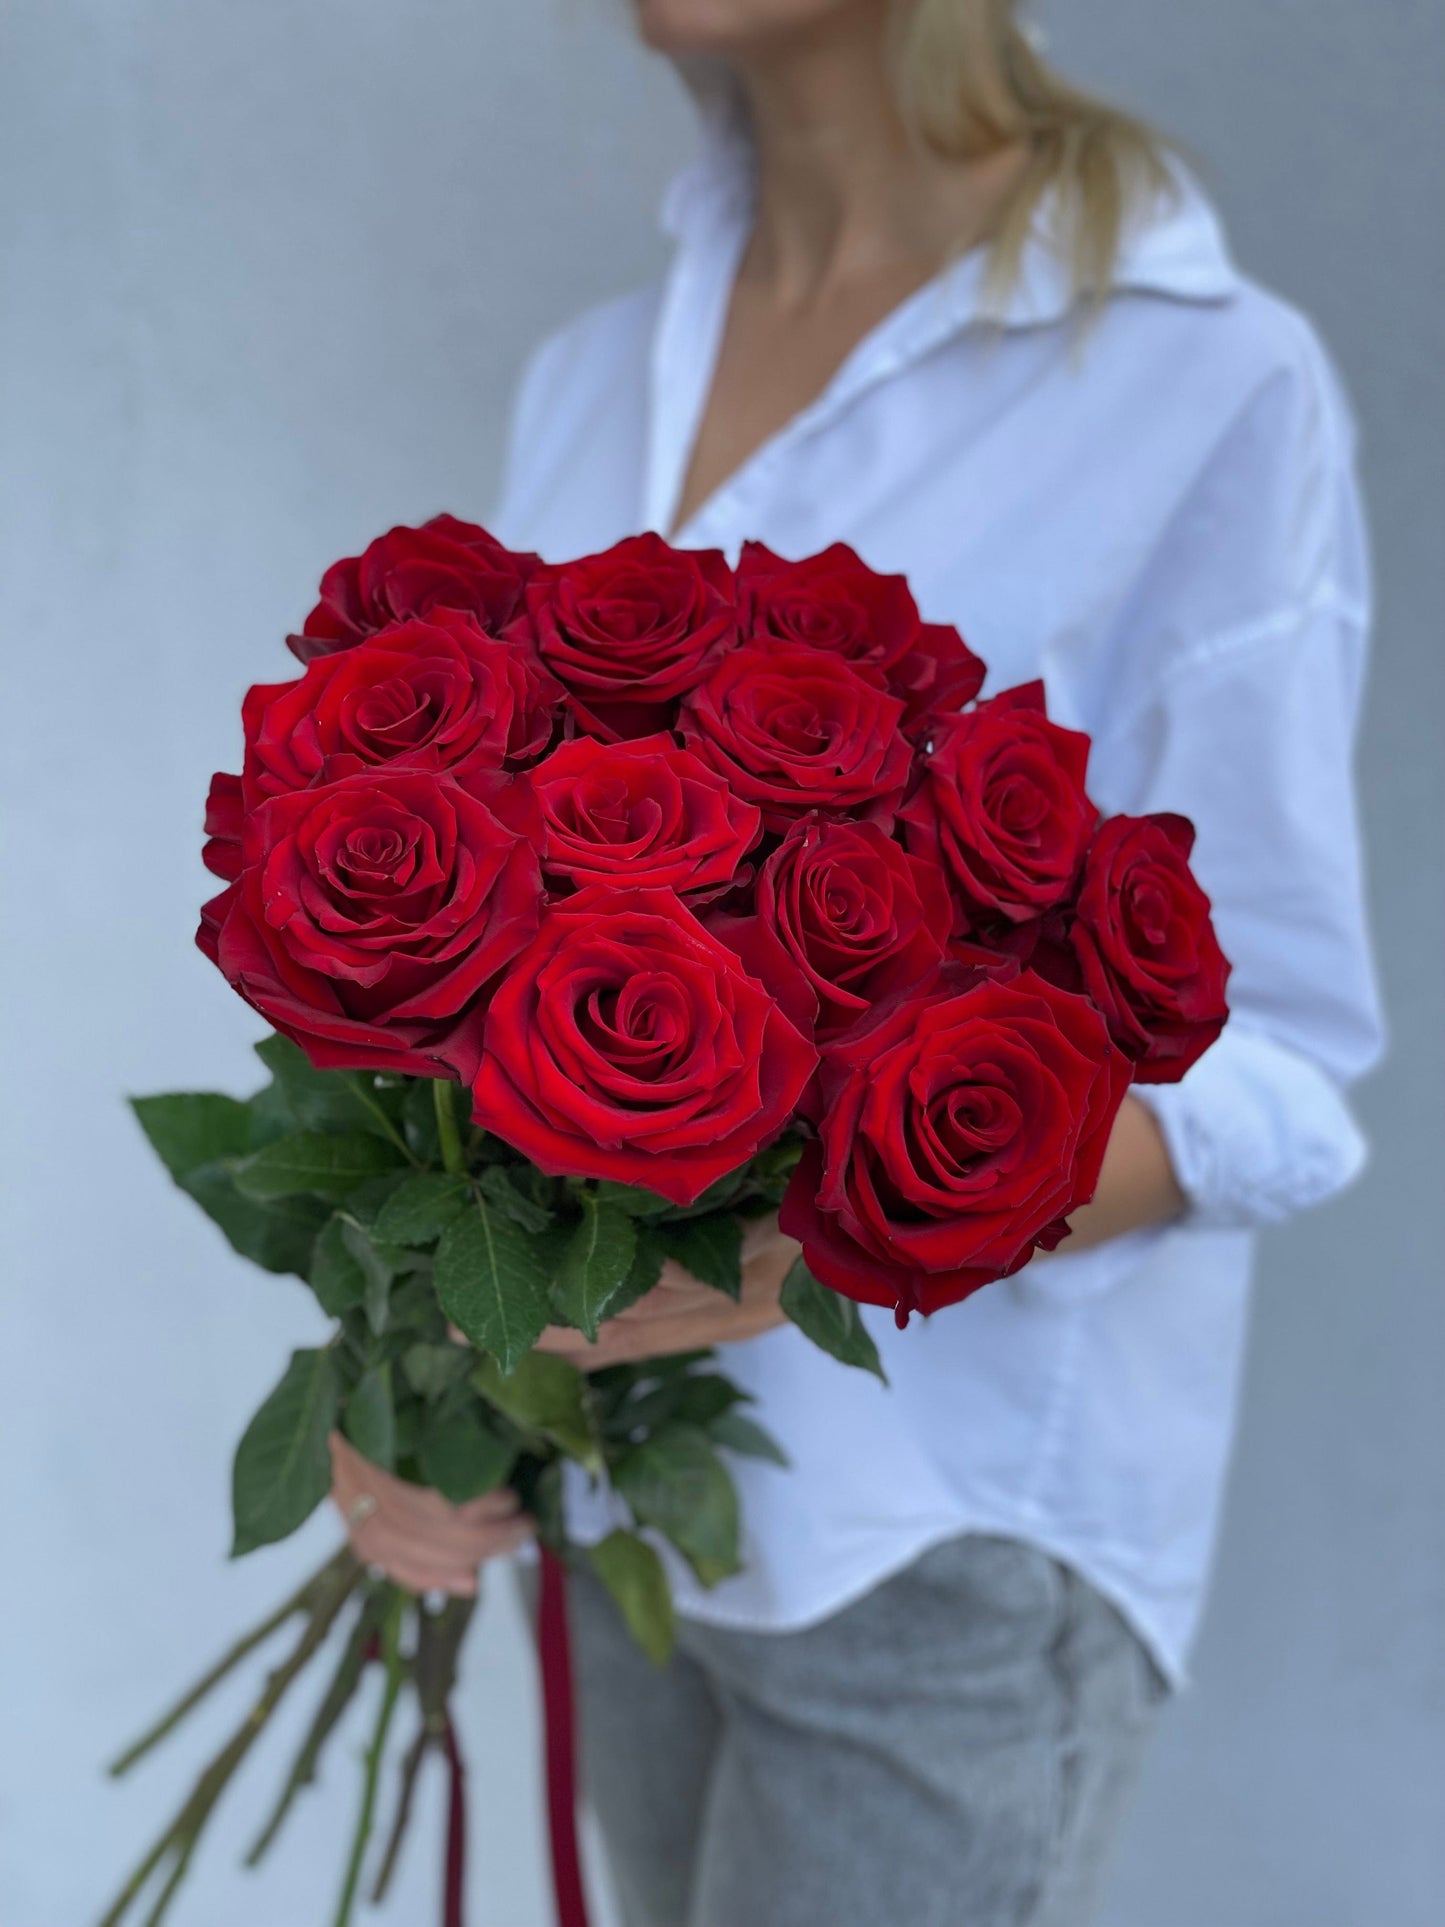 Dozen red roses